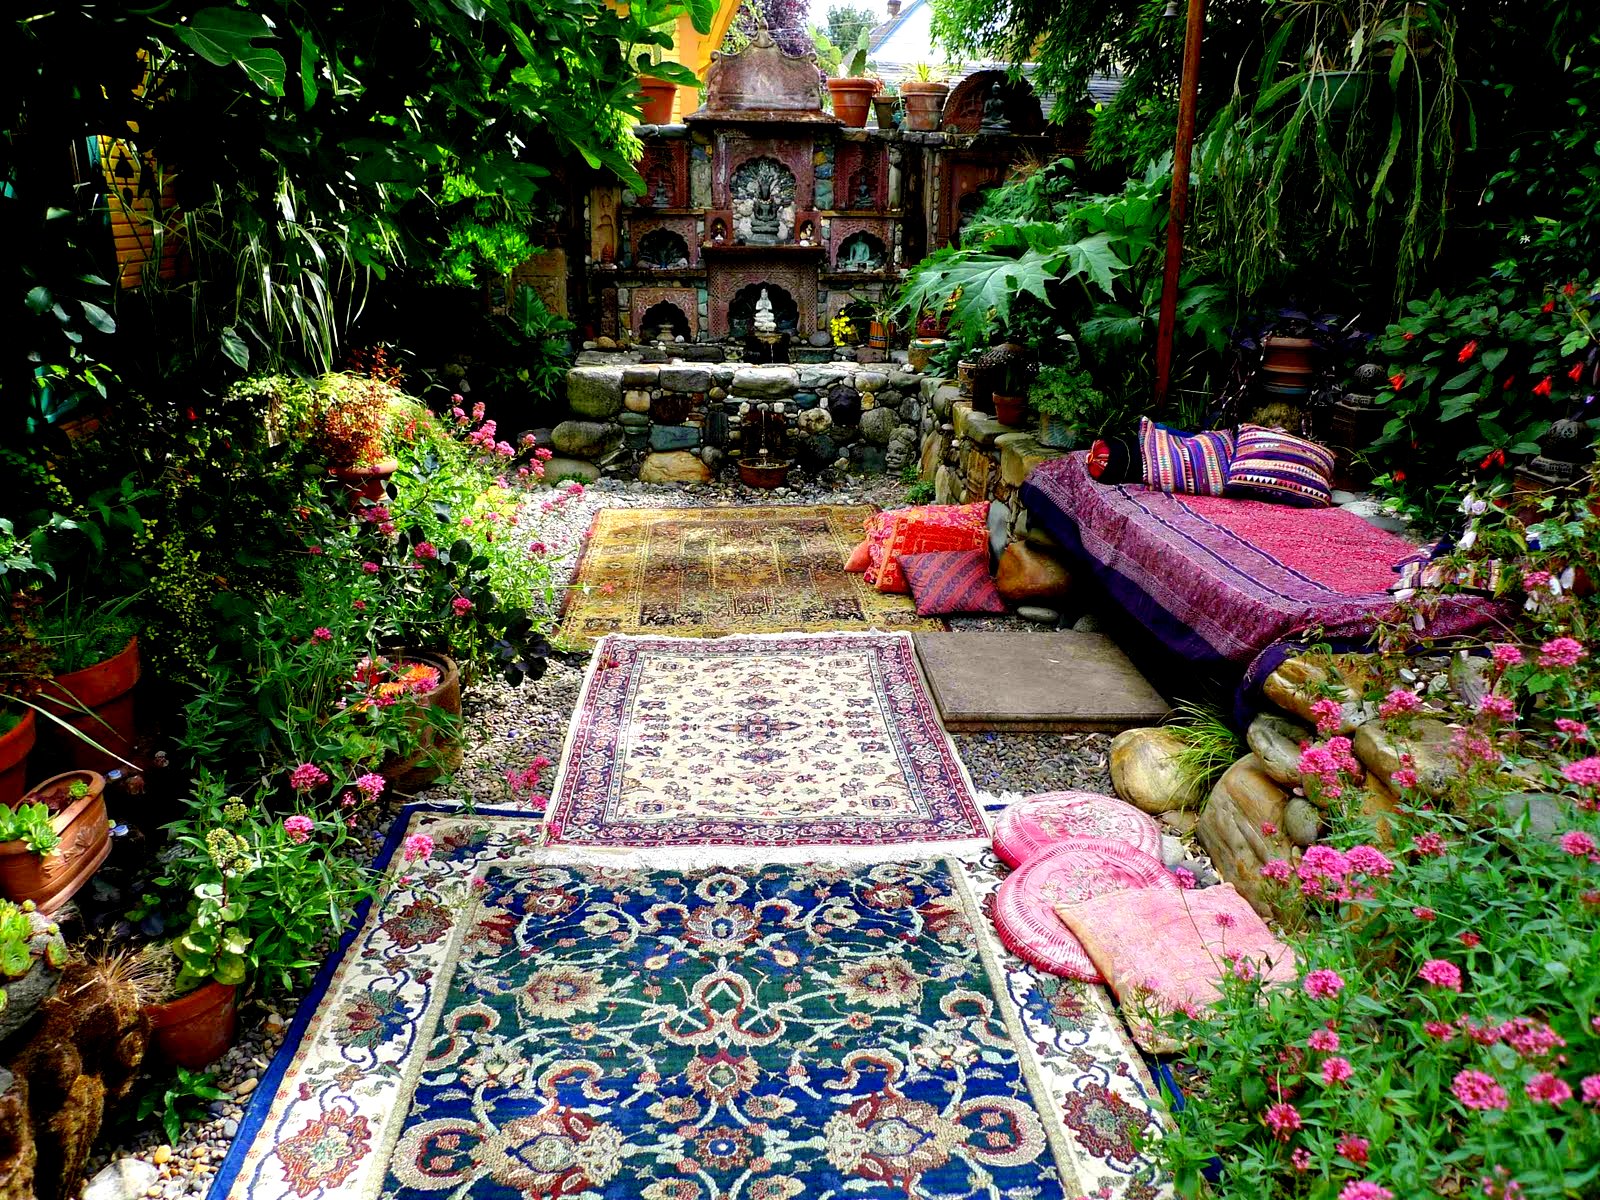 Мусульманский сад. Розарий в мавританском стиле. Мавританский стиль в ландшафте сад. Дворик в мавританском стиле. Испано мавританские сады.